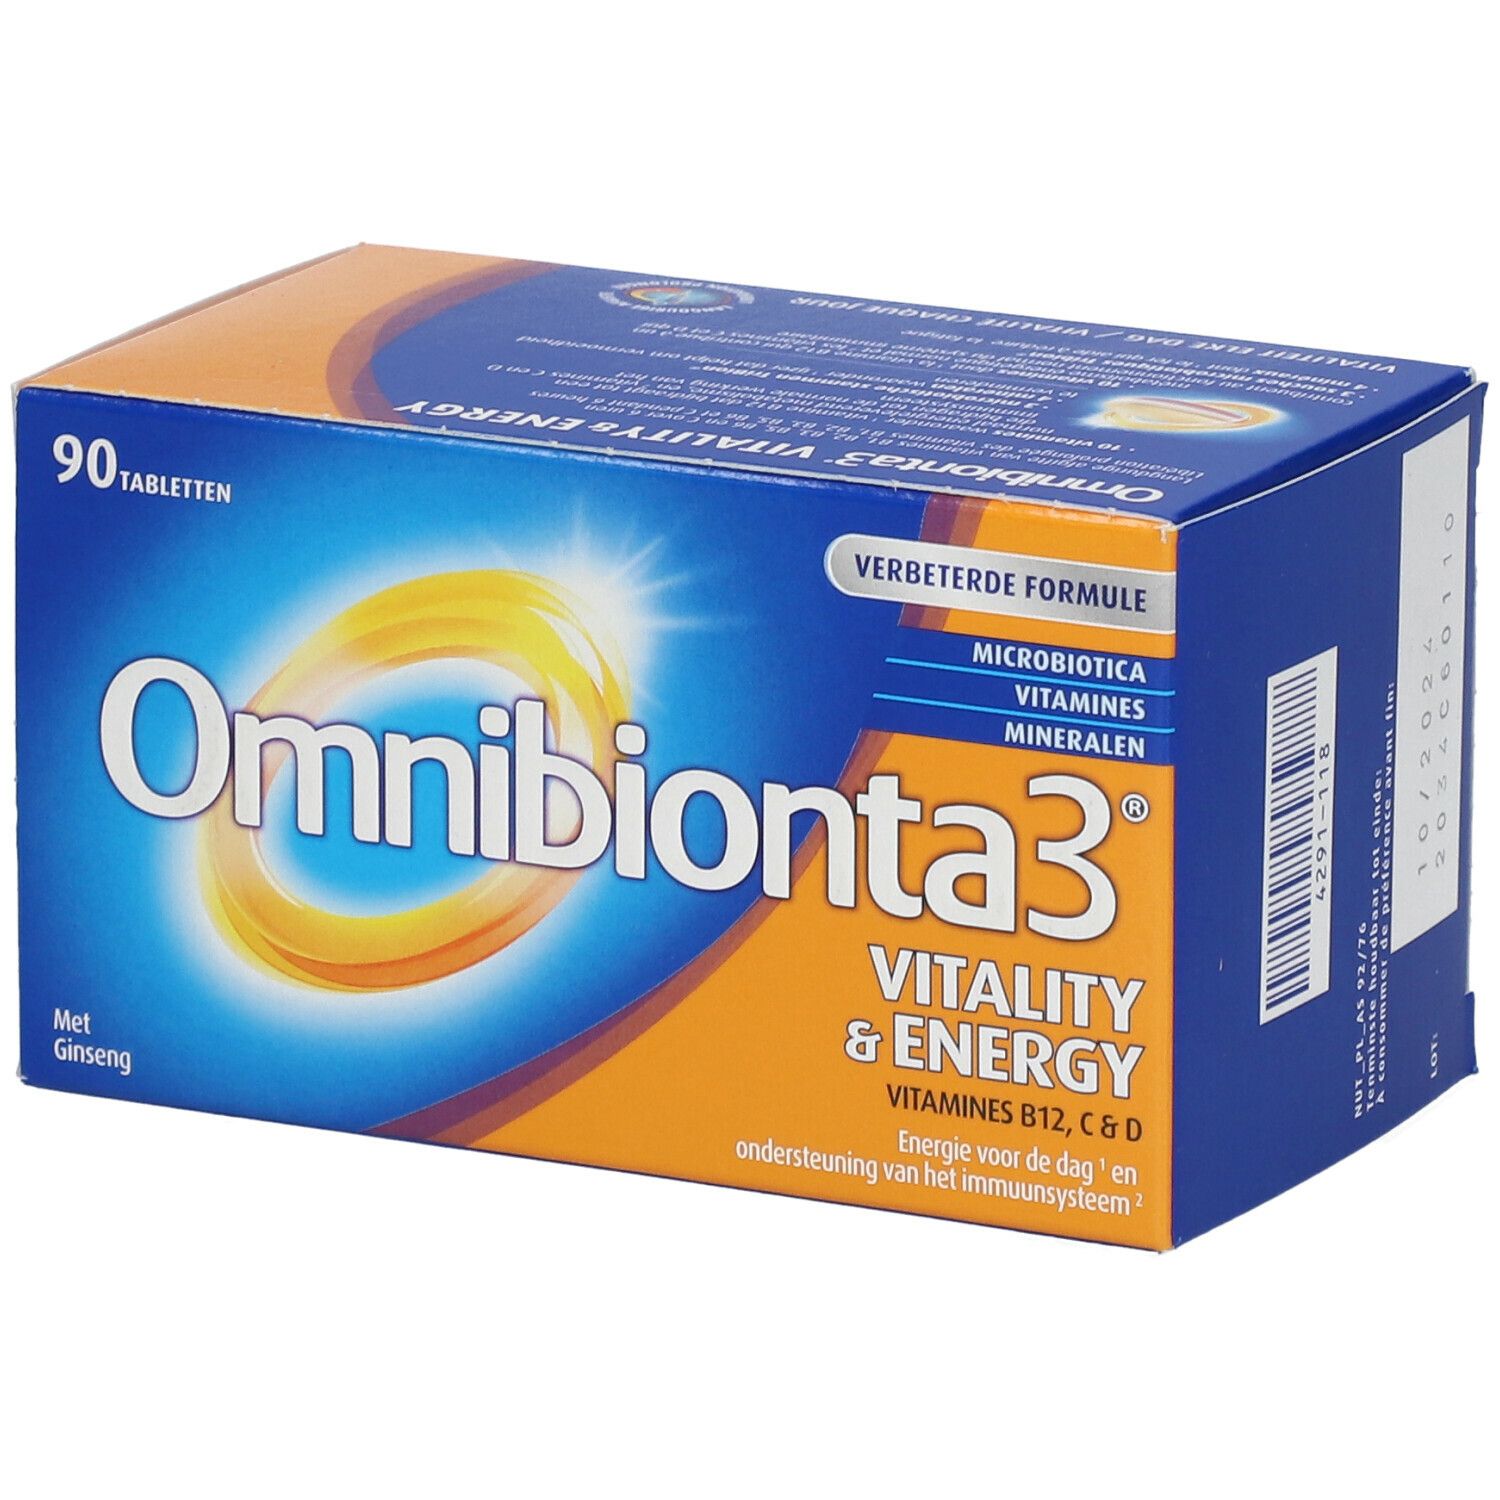 Omnibionta3® Vitality & Energy